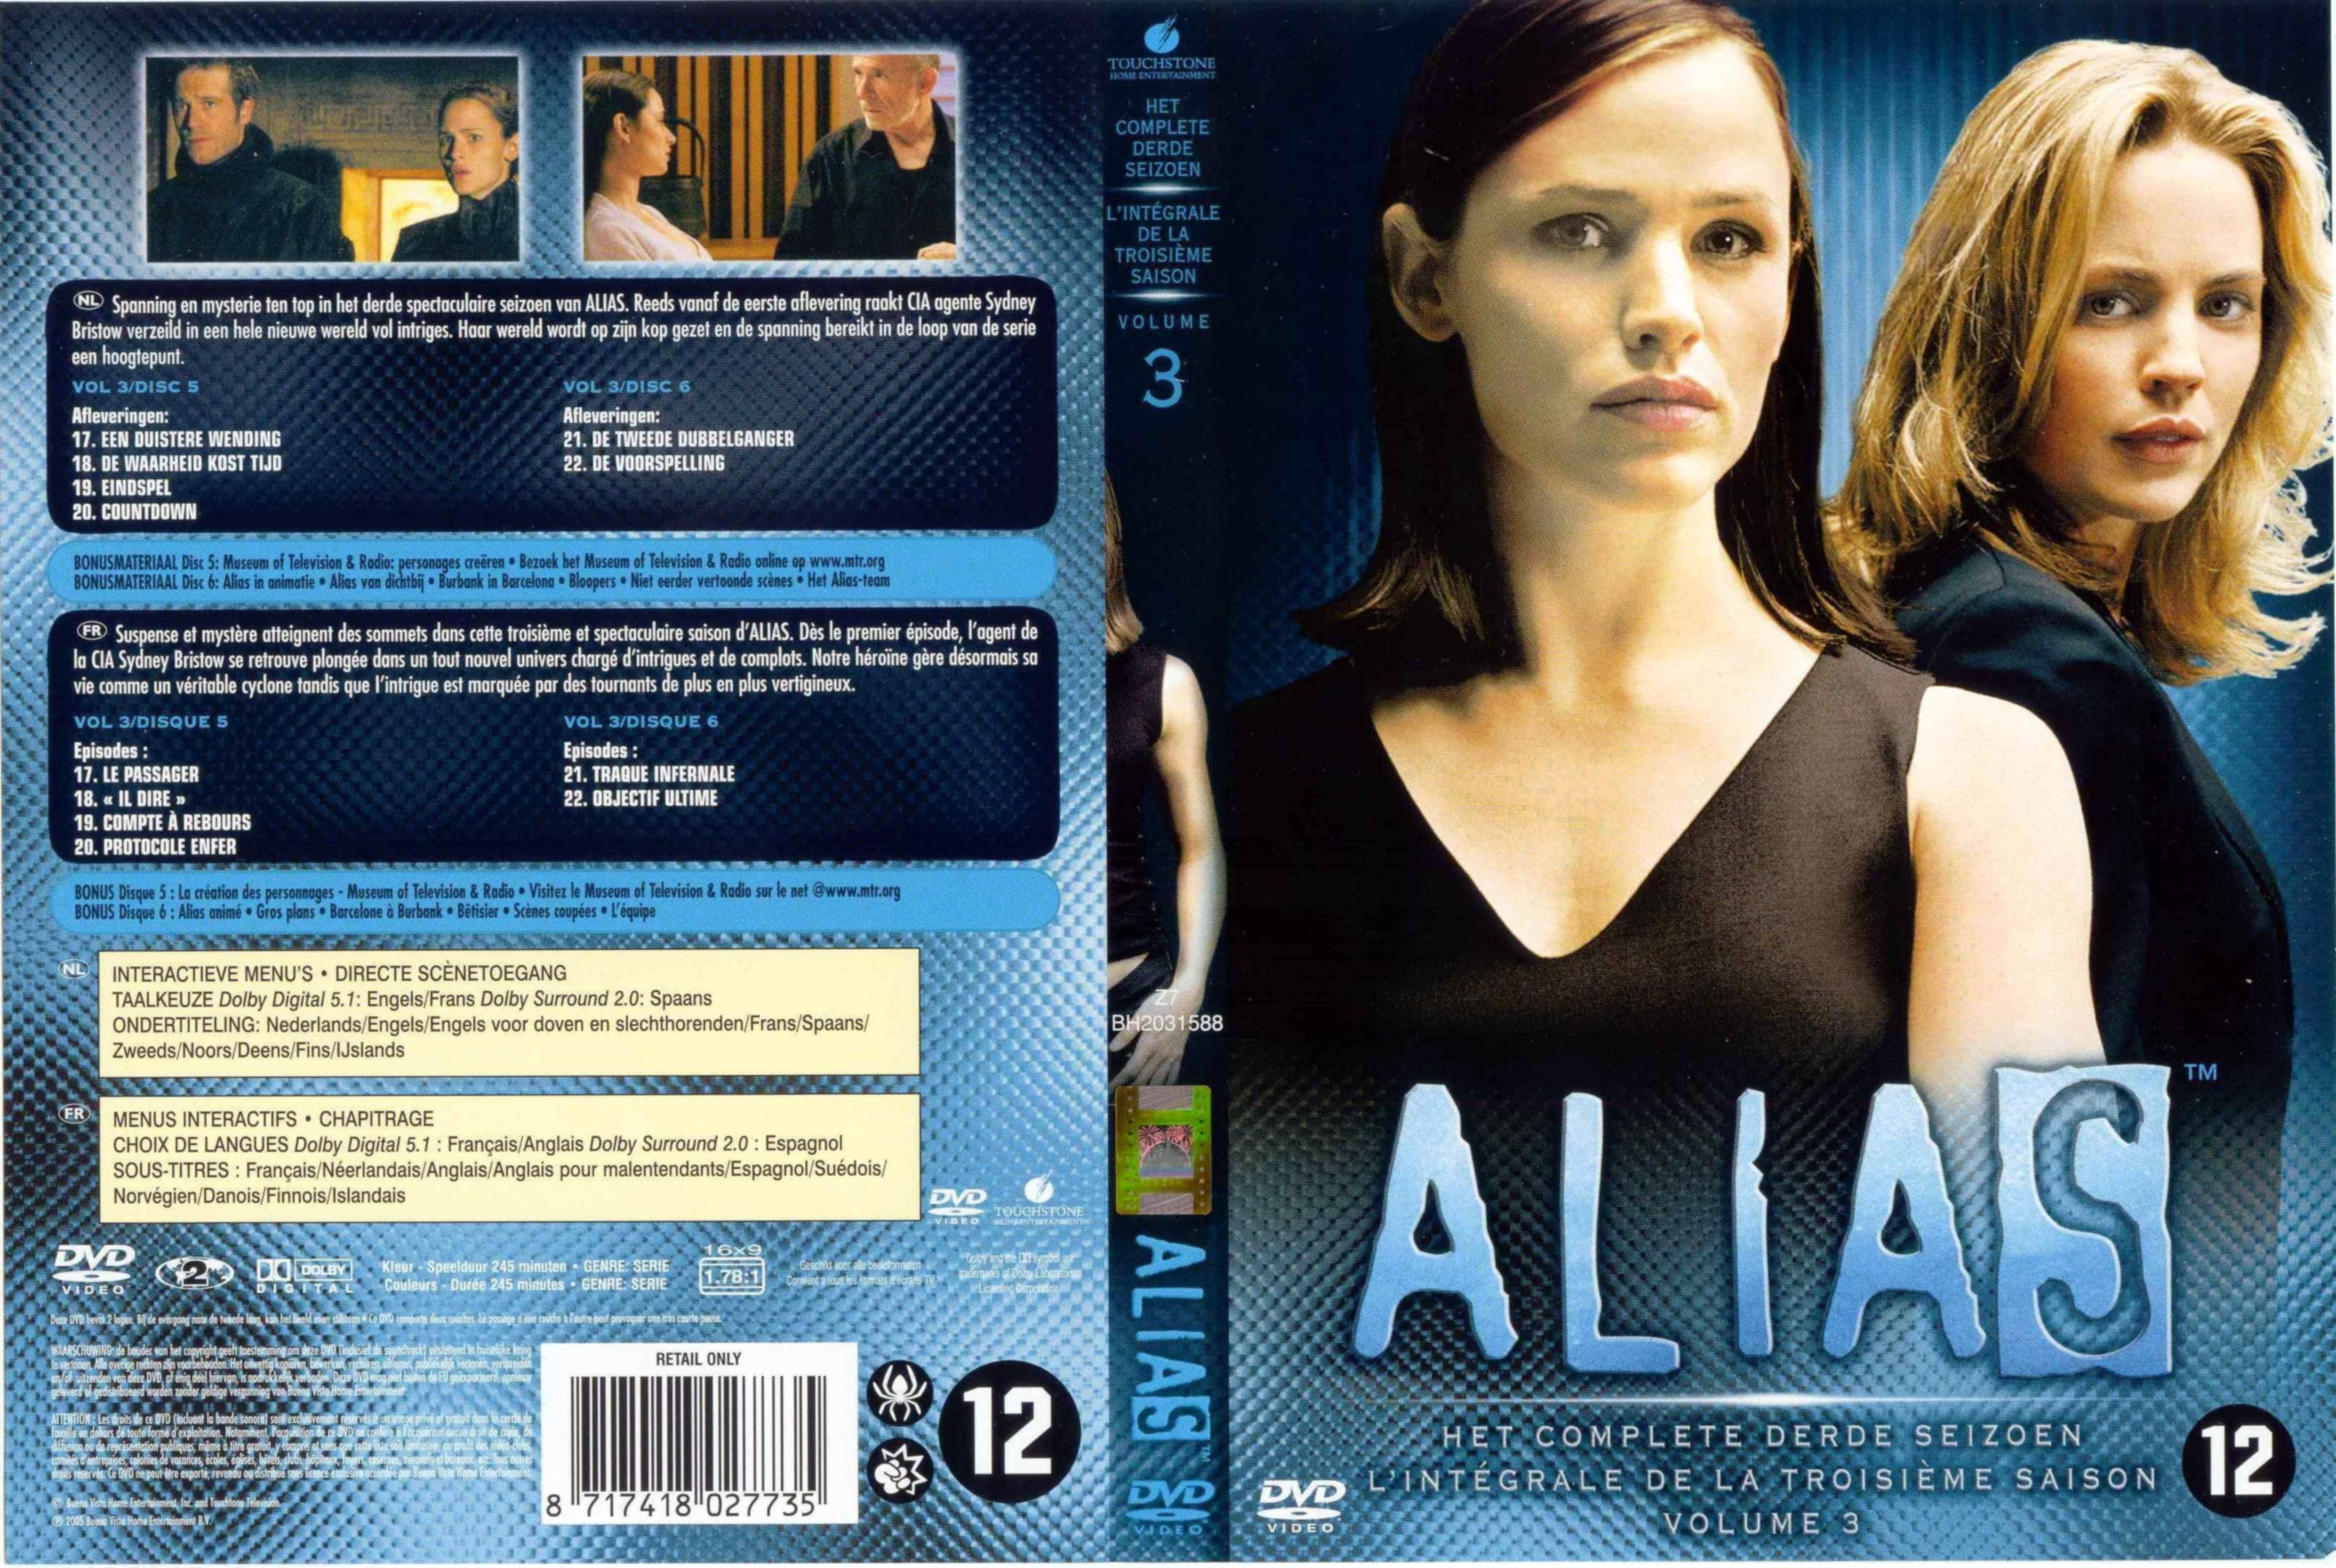 Jaquette DVD Alias saison 3 DVD 3